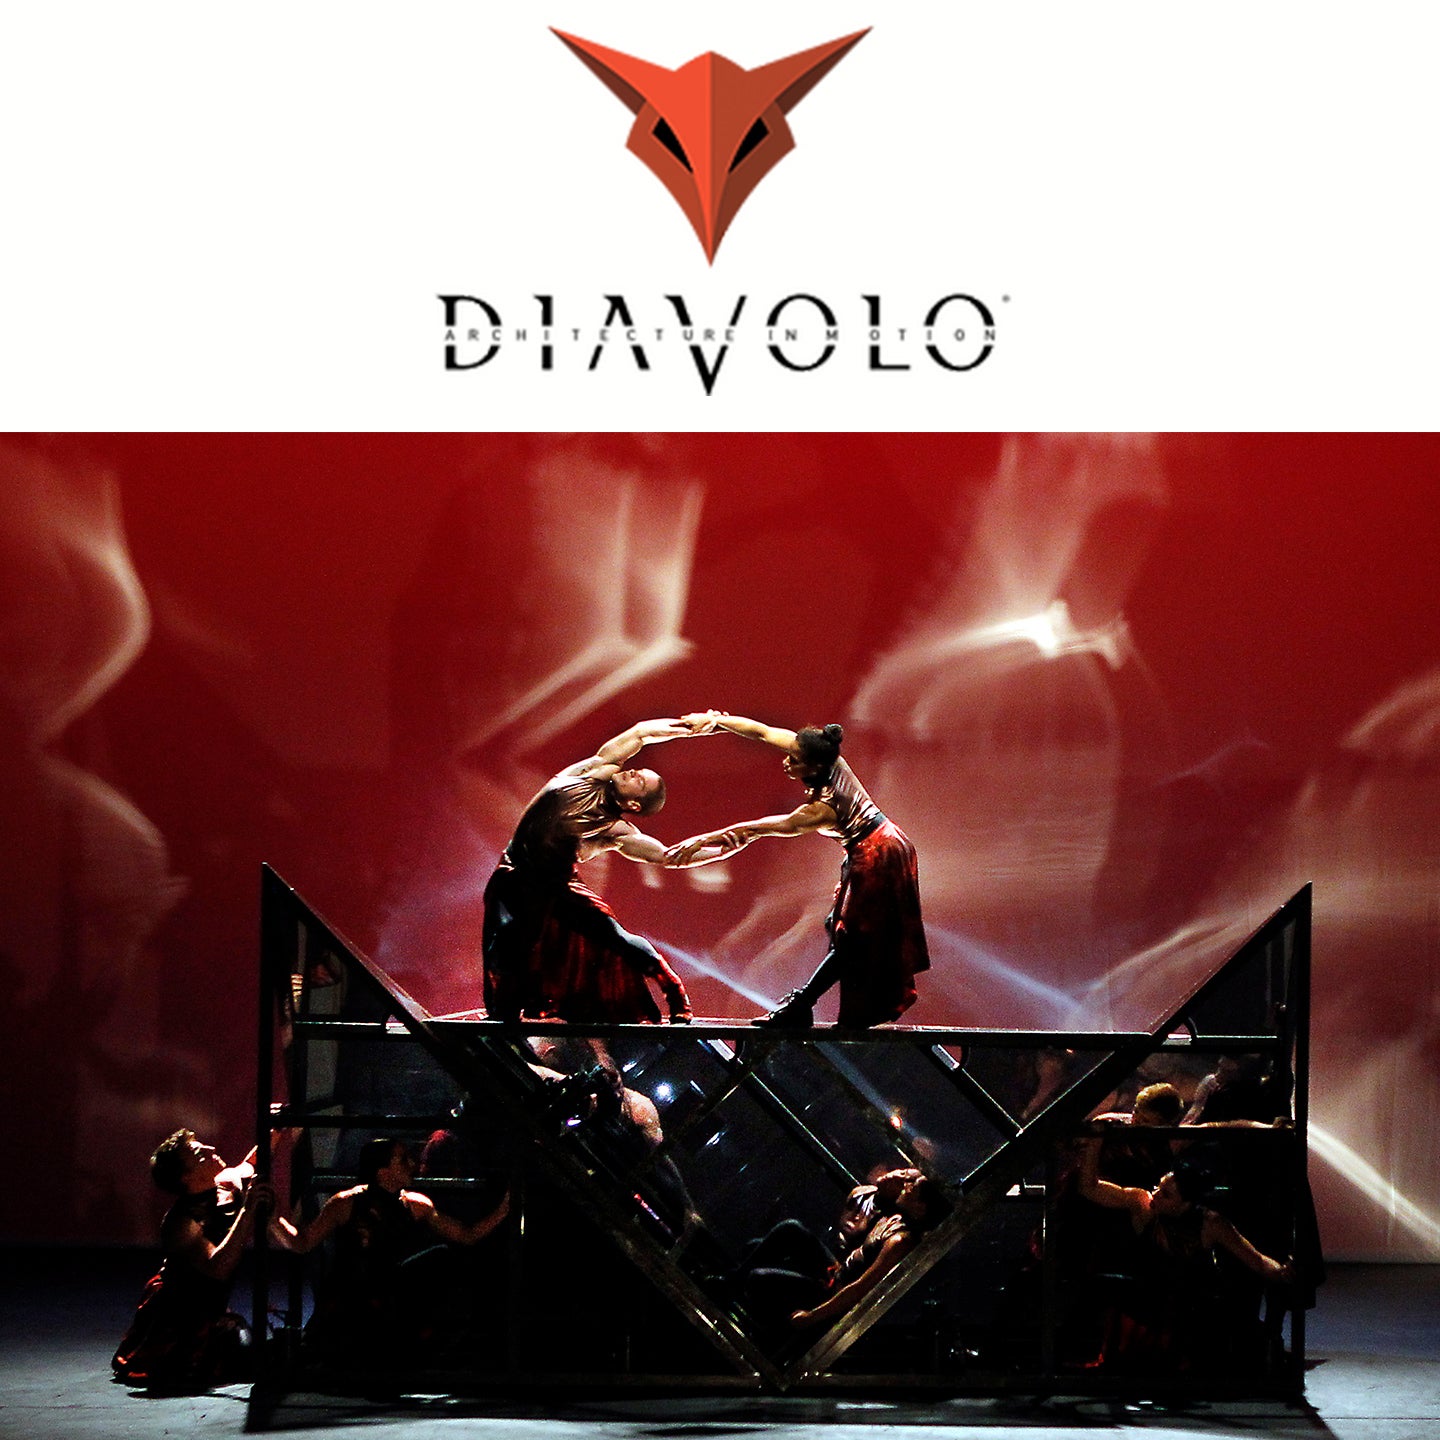 Diavolo: Architecture in Motion